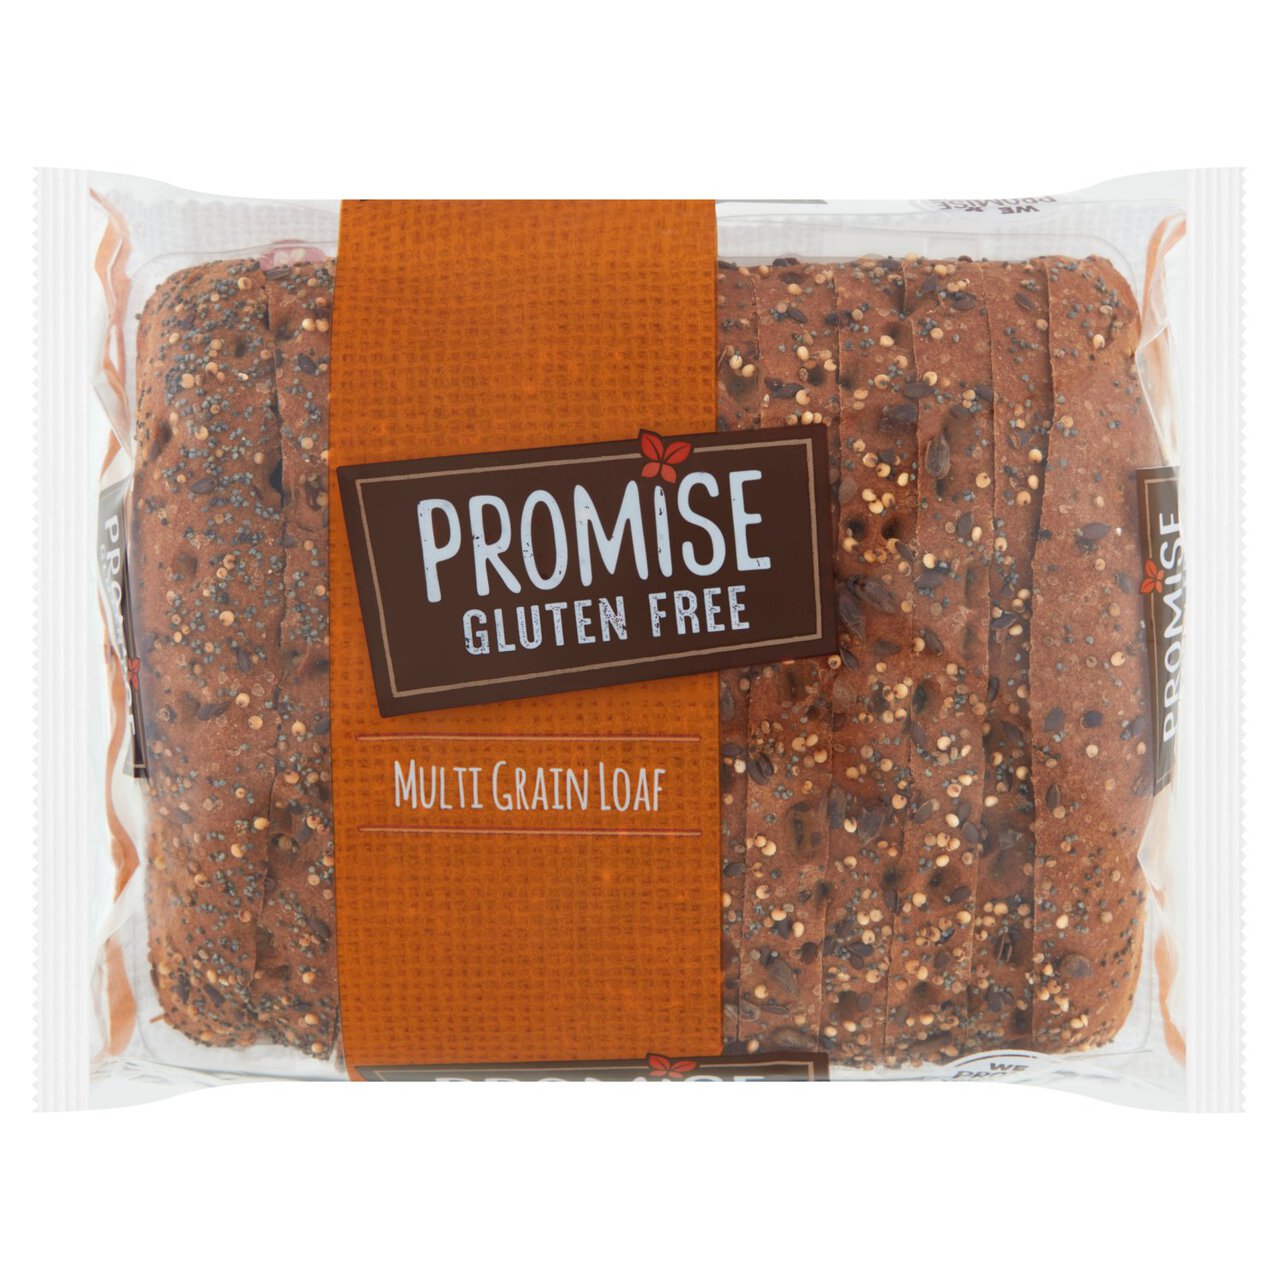 Promise Gluten Free Multigrain Loaf 480g